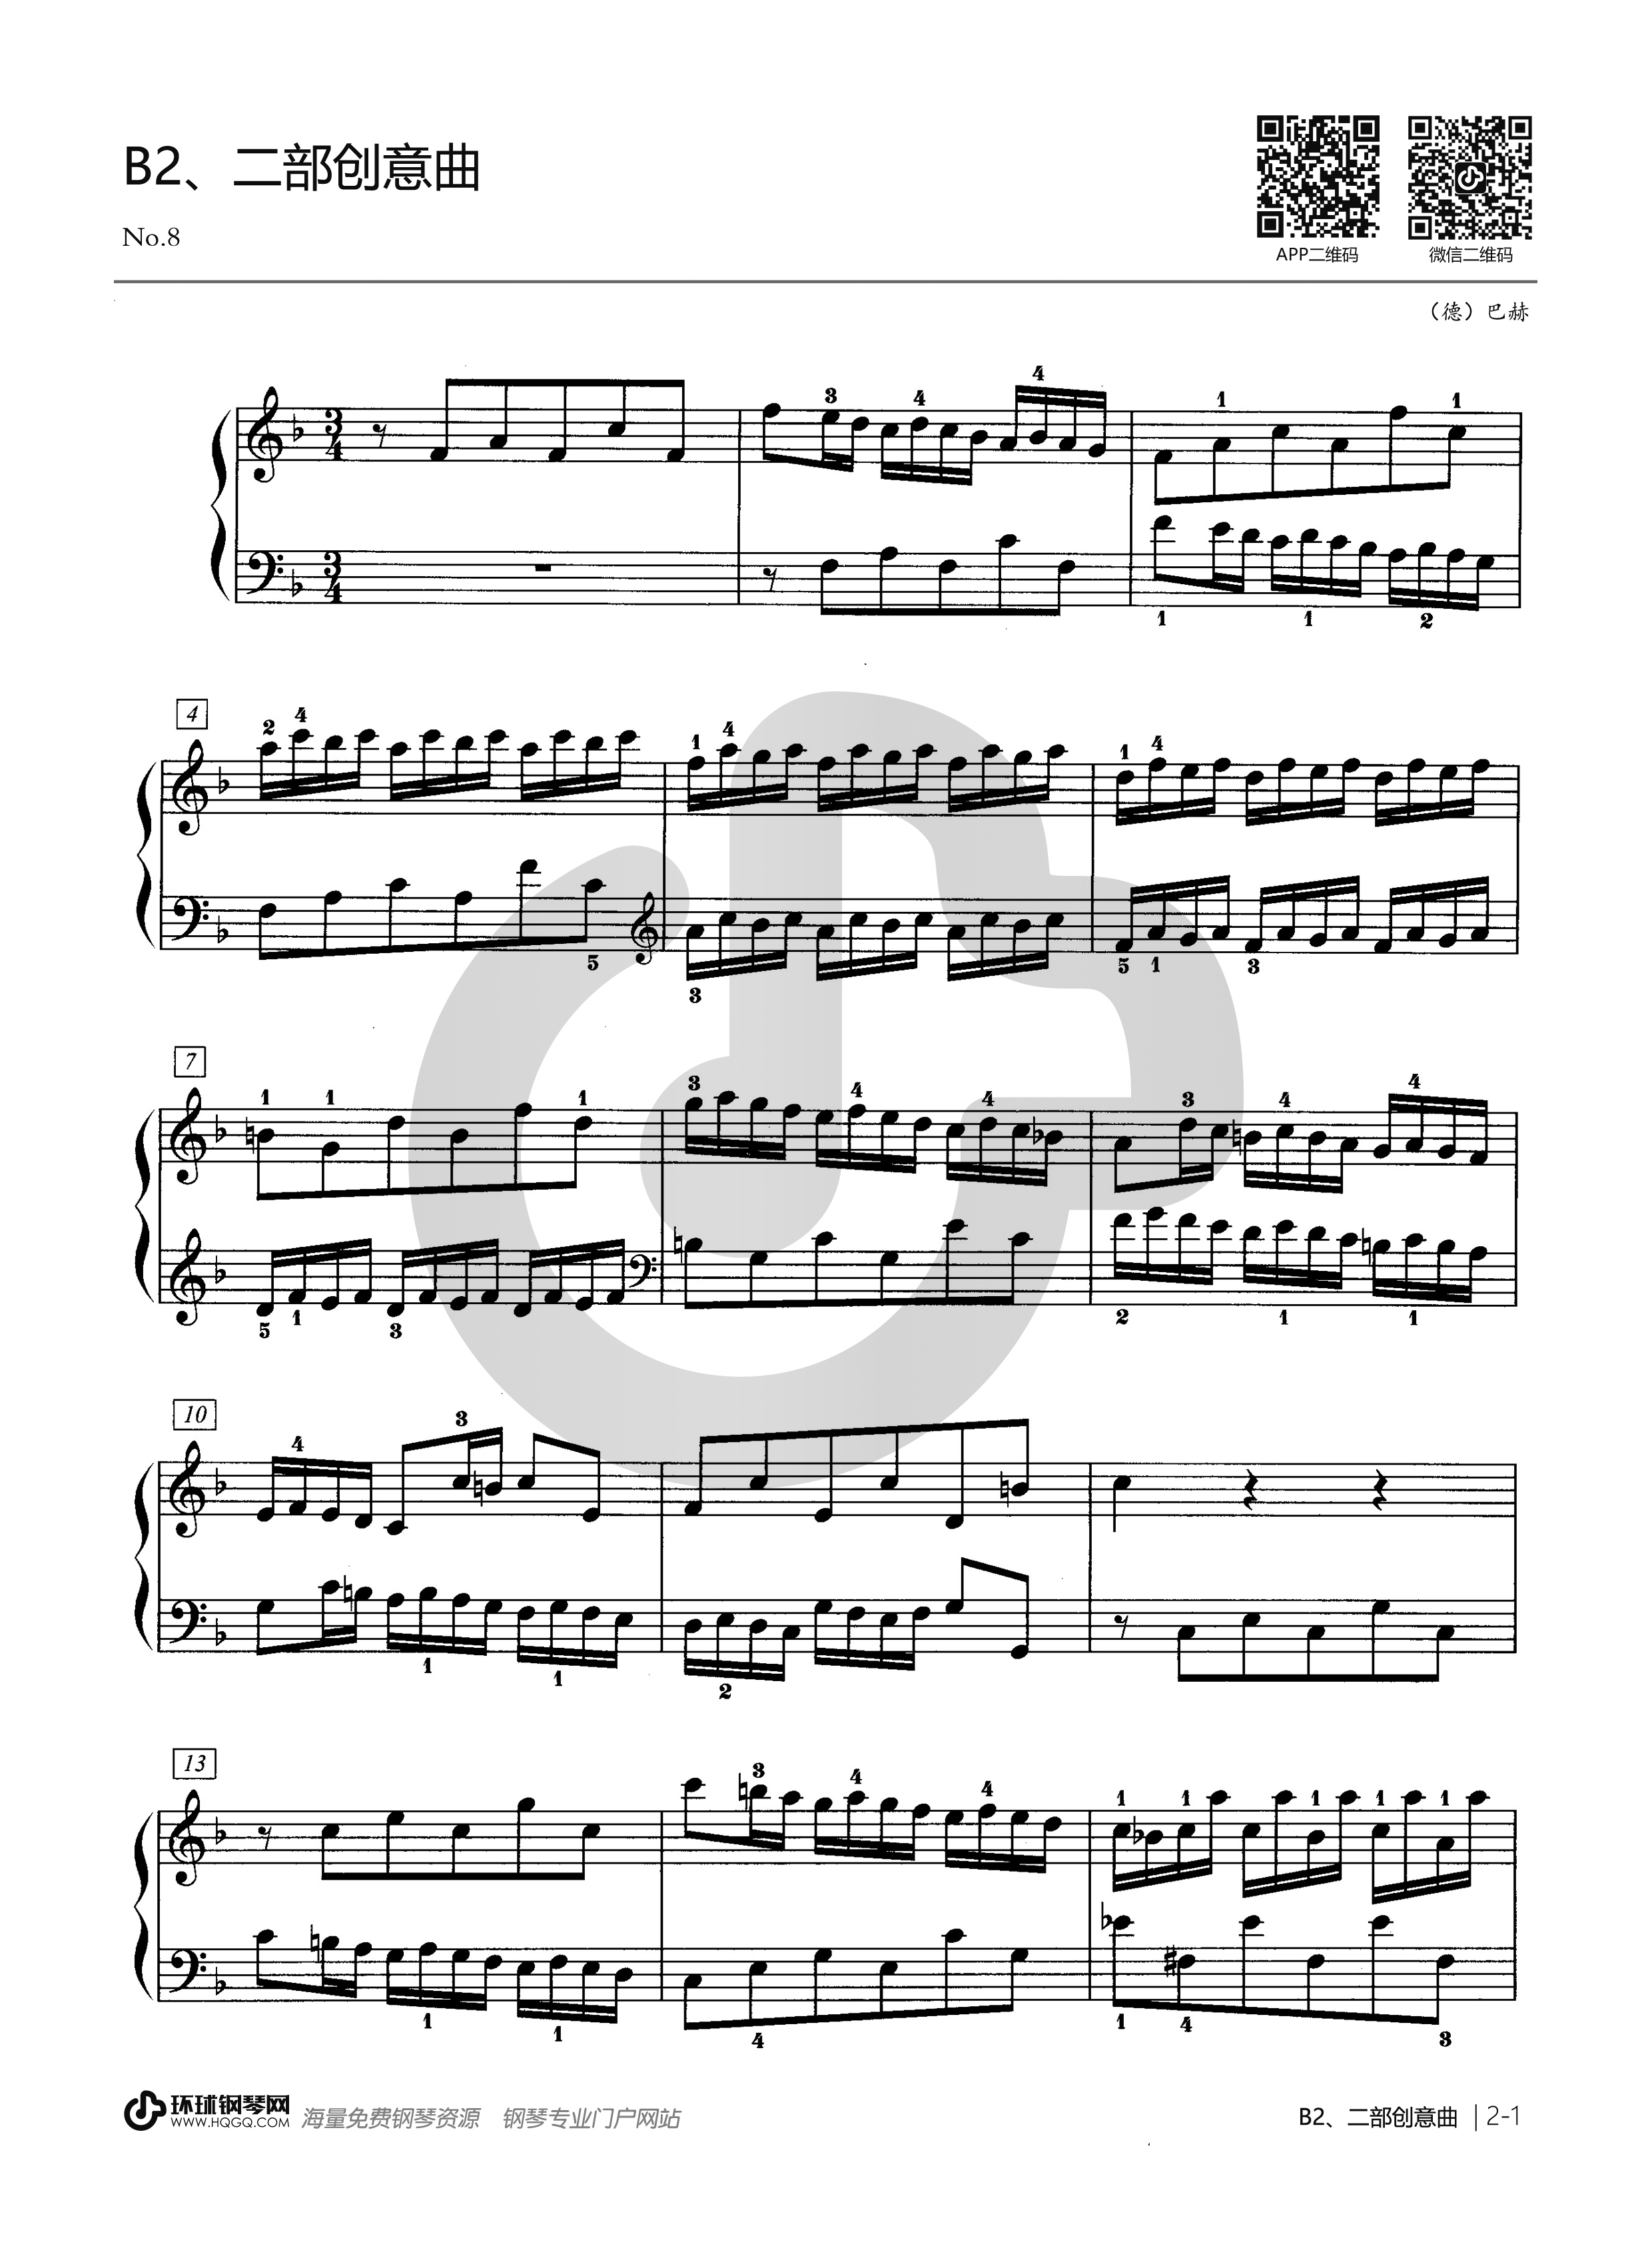 巴赫二部创意曲8谱子图片